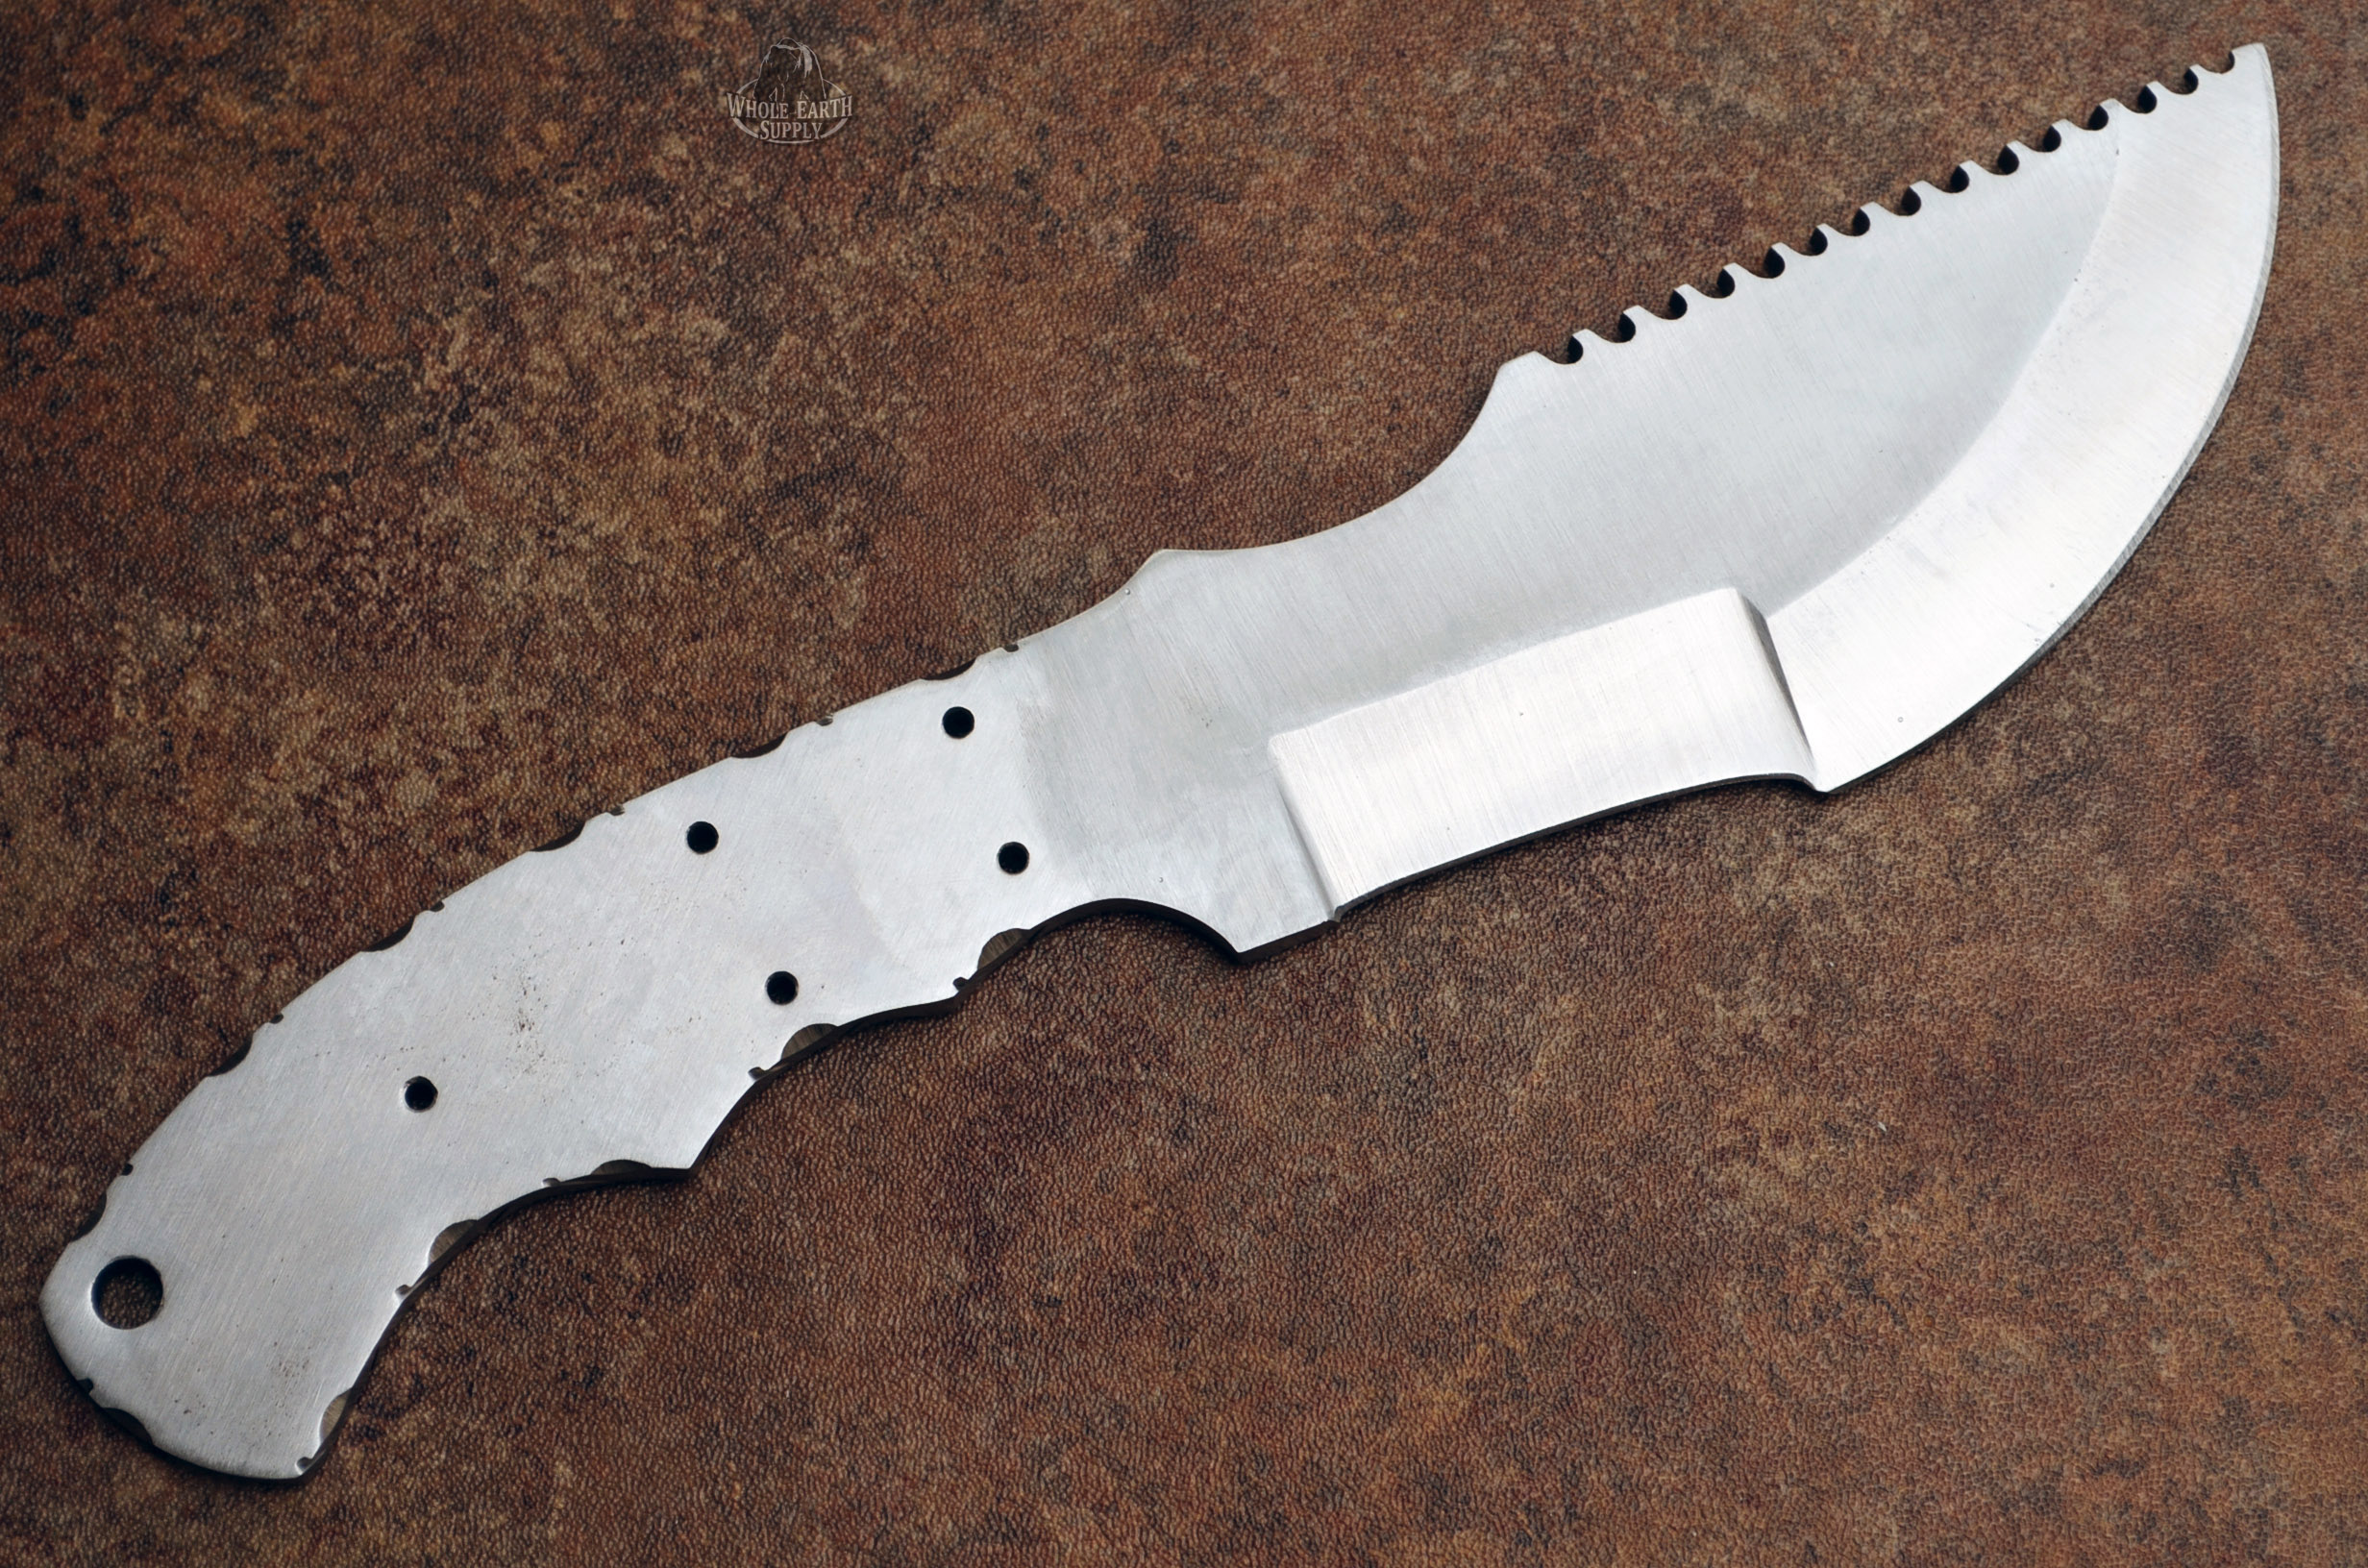 D2 Steel Tracker Knife Making Blank Blade Skinner Skinning D-2 Knives